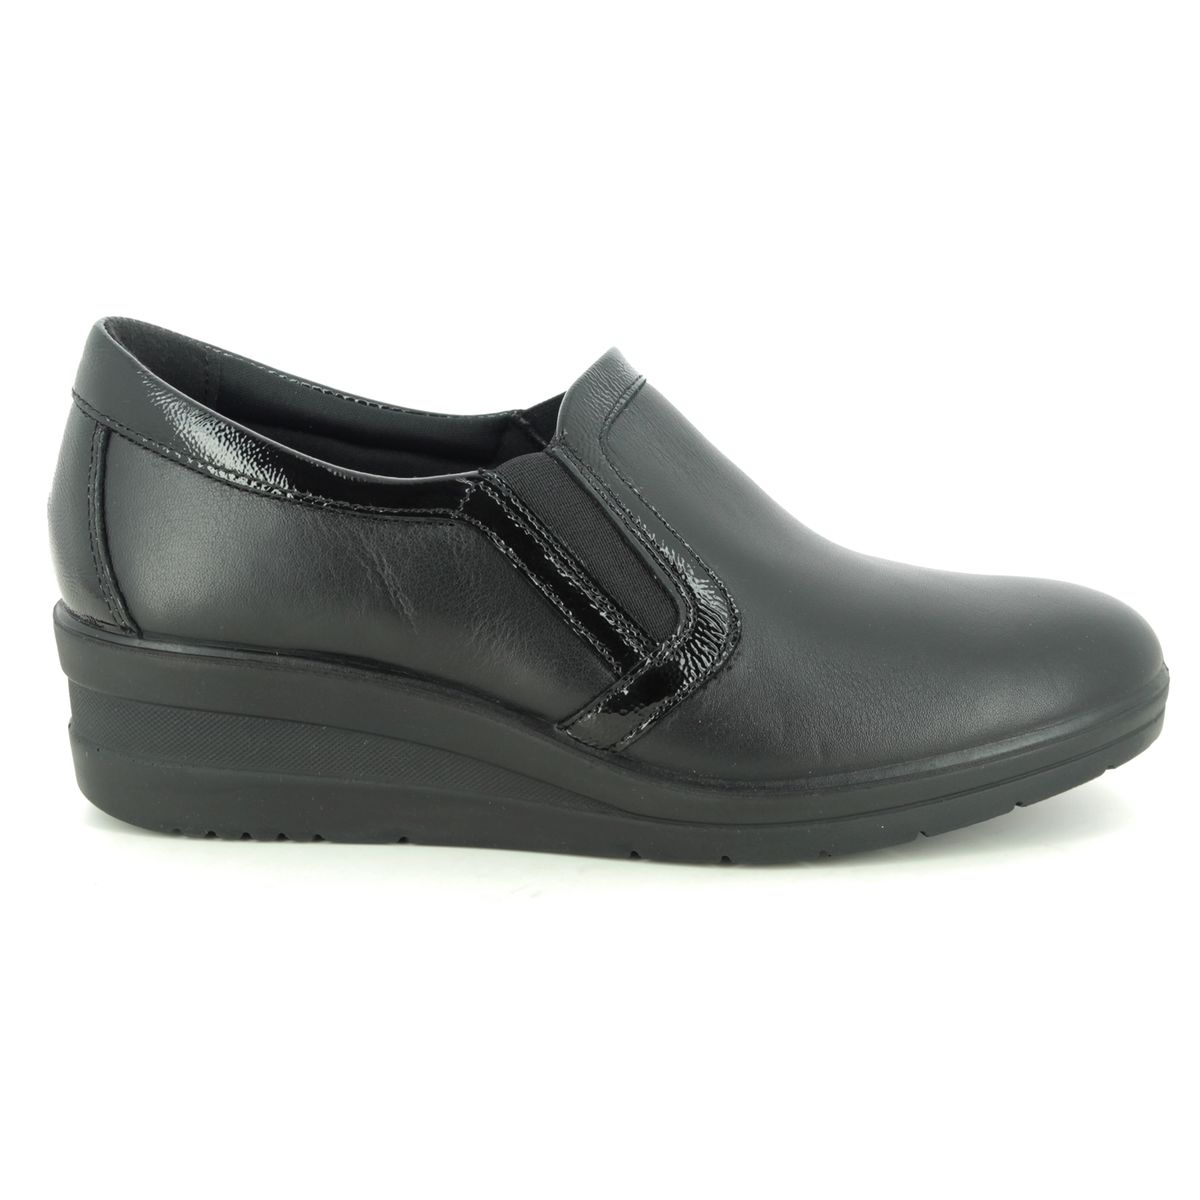 IMAC Rose 7600-1400011 Black leather Comfort Slip On Shoes